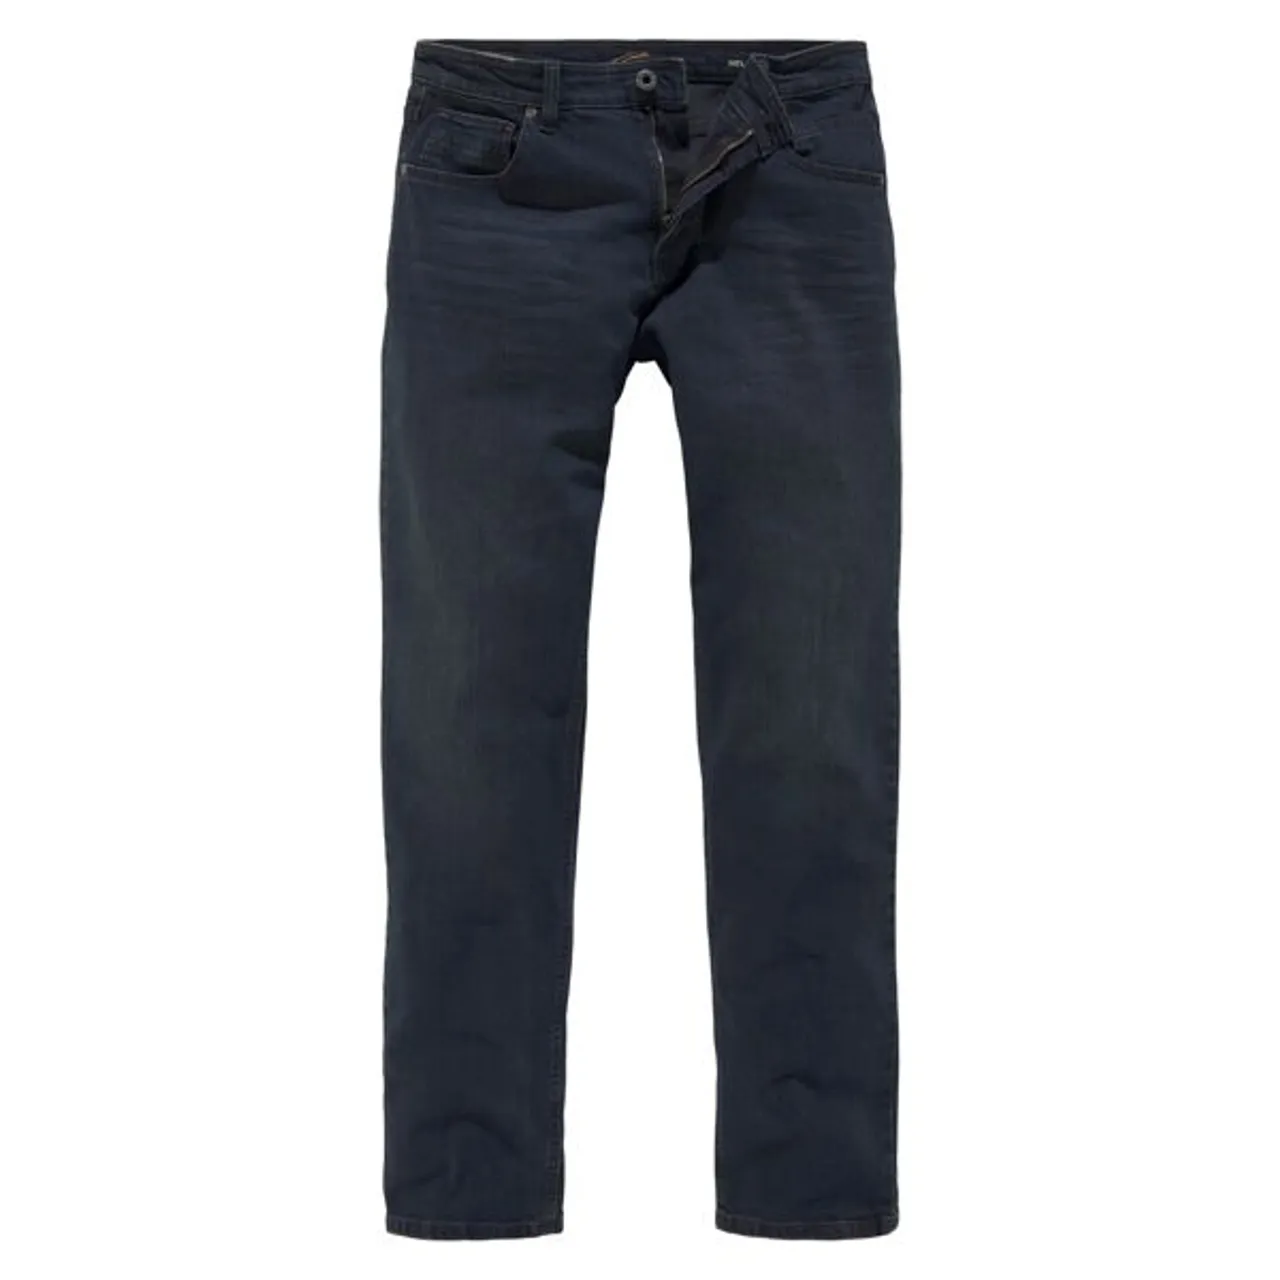 5-Pocket-Jeans CAMEL ACTIVE "WOODSTOCK" Gr. 33, Länge 32, blau (dark blue32) Herren Jeans 5-Pocket-Jeans